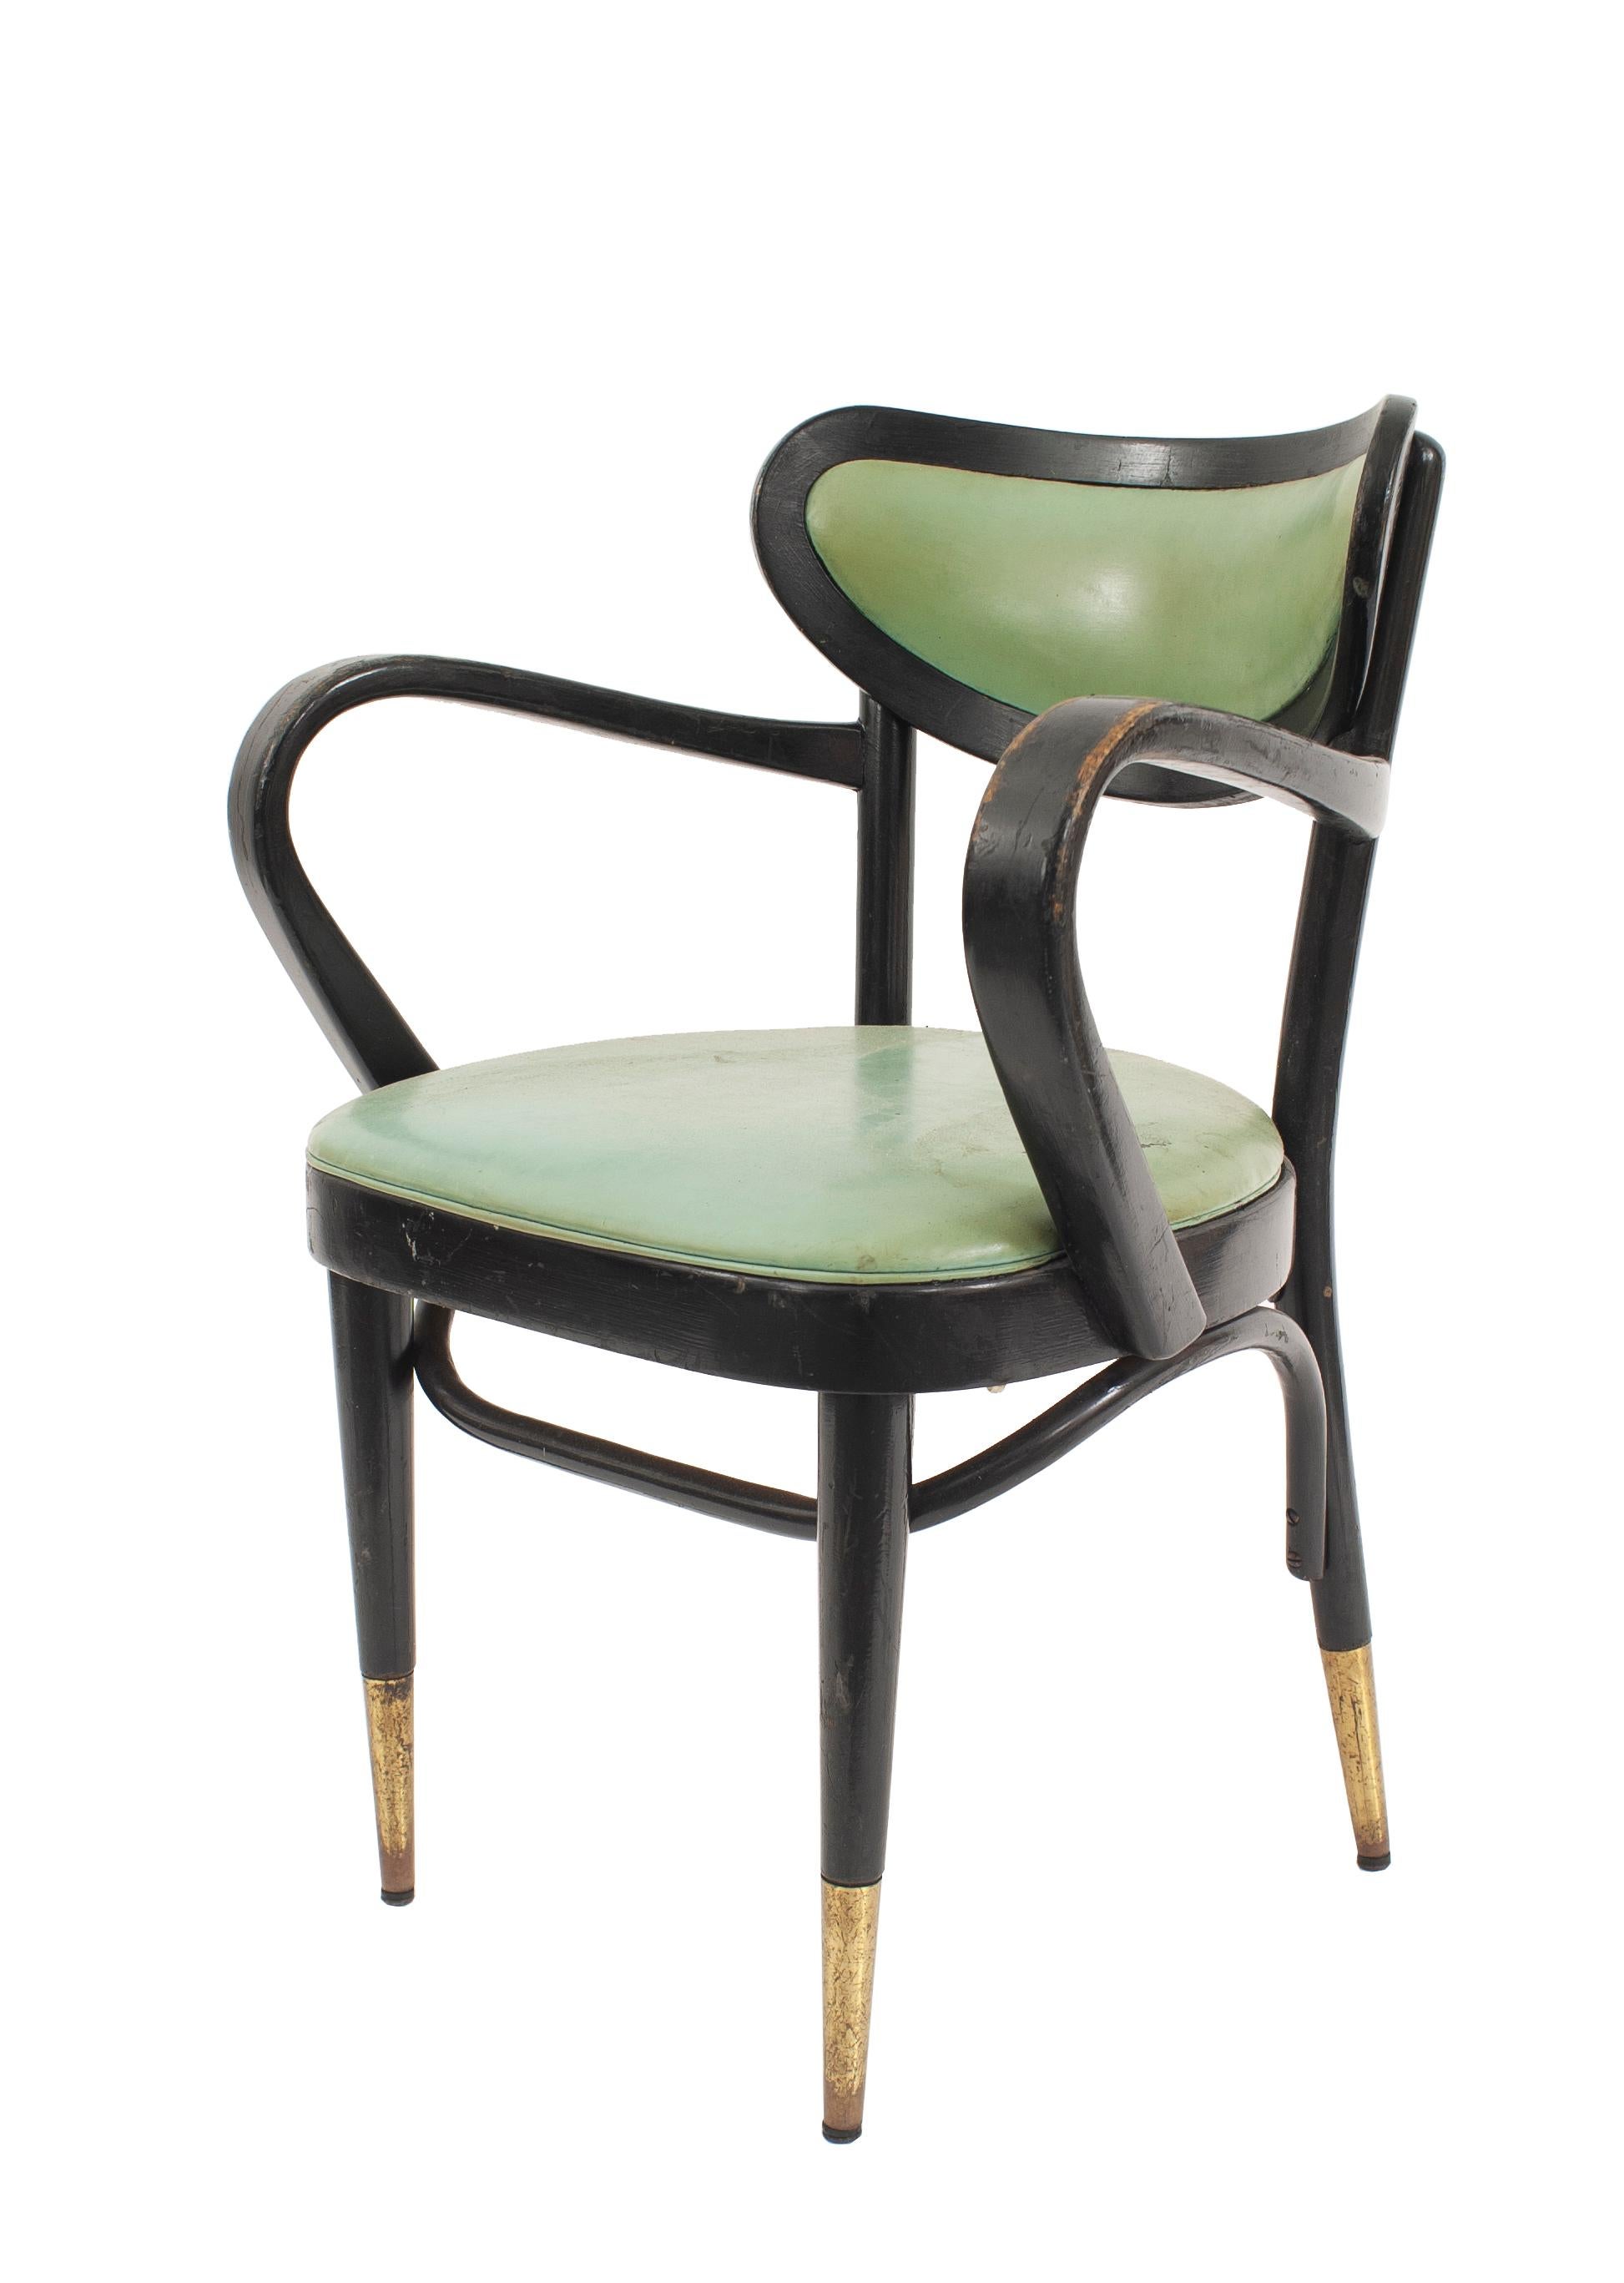 8 Beistellstühle aus Bugholz aus der Mitte des Jahrhunderts mit schwarz lackierten Rahmen, gebogenen Arm- und Rückenlehnen, grüner Lederpolsterung und Beinschienen aus Messing (Preis pro Stück).
 